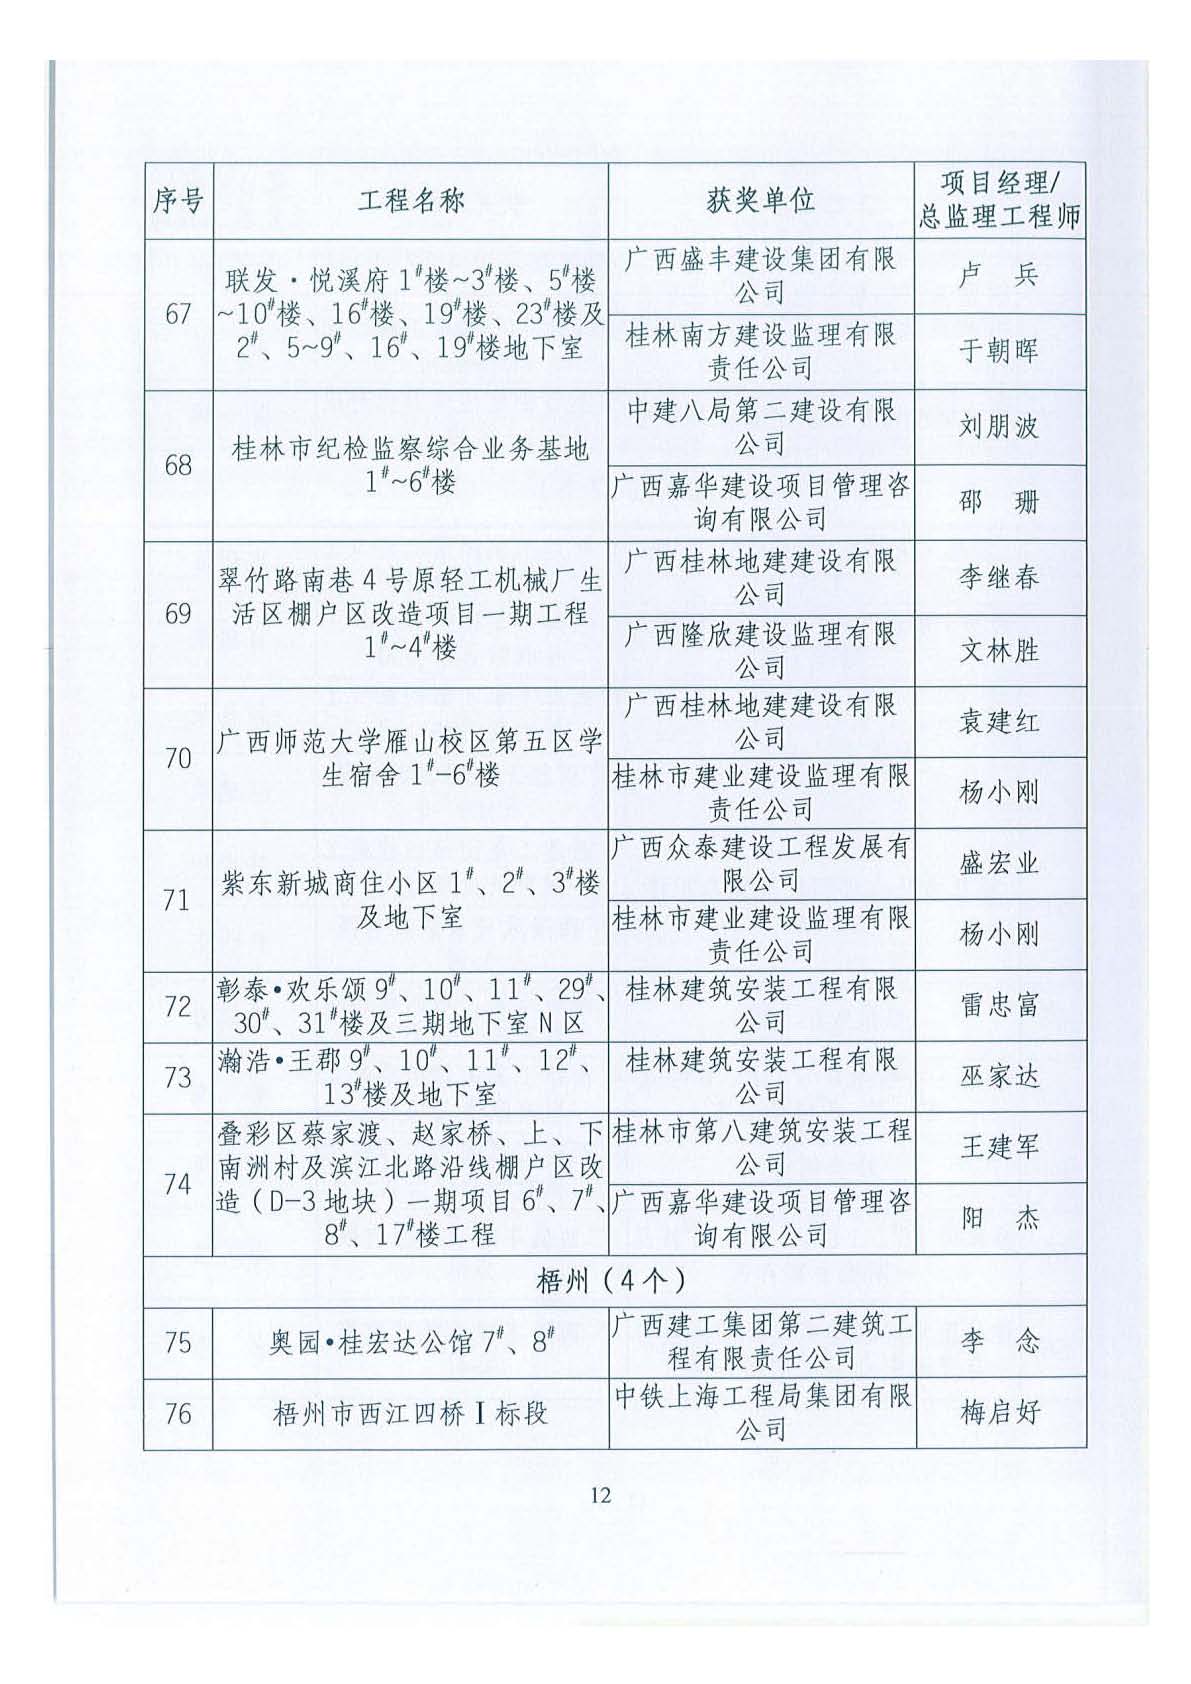 关于公布2018年下半年广西壮族自治区建设工程施工安全文明标准化工地的通知 _页面_12.jpg